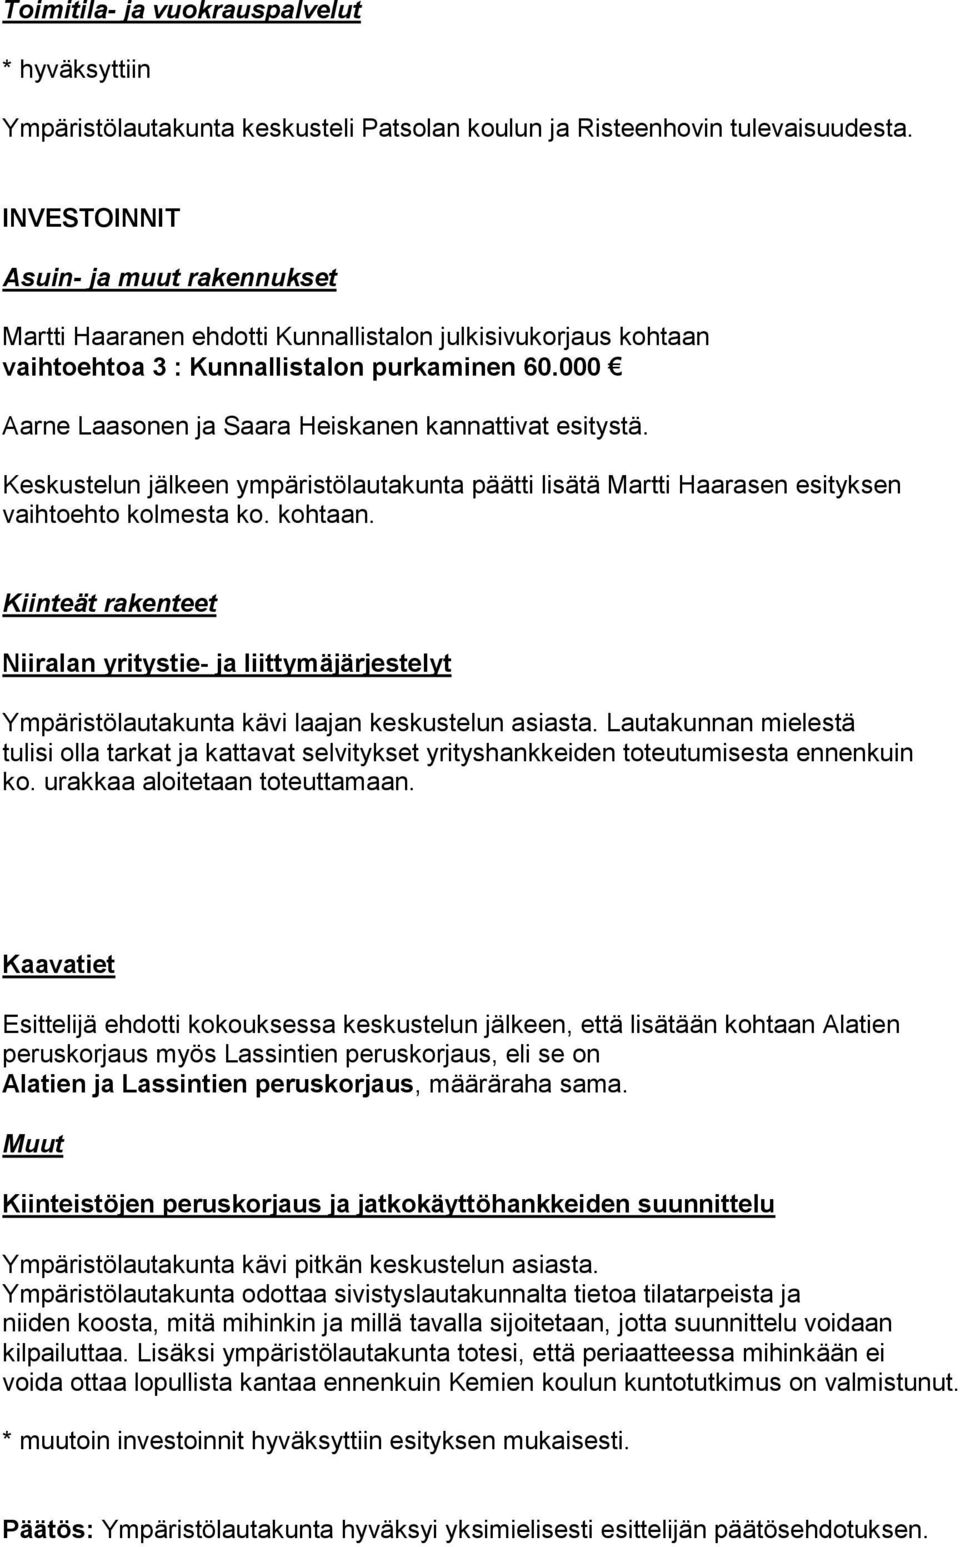 000 Aarne Laasonen ja Saara Heiskanen kannattivat esitystä. Keskustelun jälkeen ympäristölautakunta päätti lisätä Martti Haarasen esityksen vaihtoehto kolmesta ko. kohtaan.